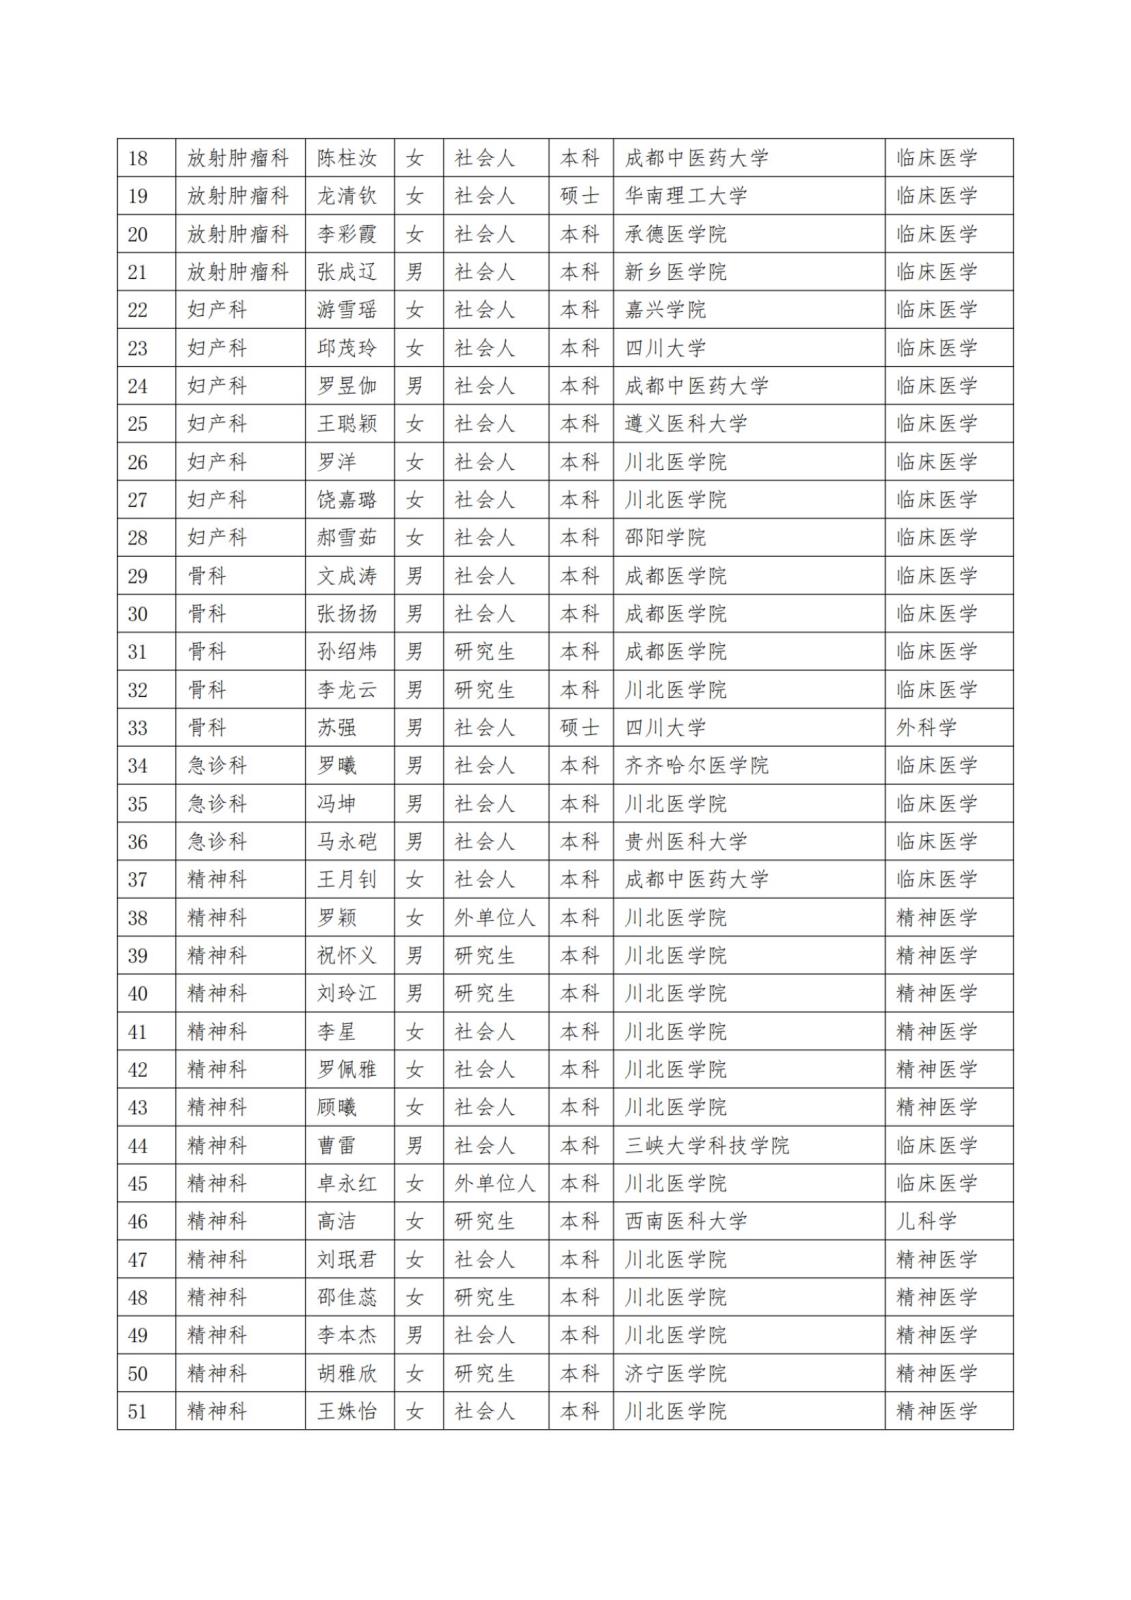 2023级住院医师规范化培训招生录取结果公示_纯图版_01.jpg